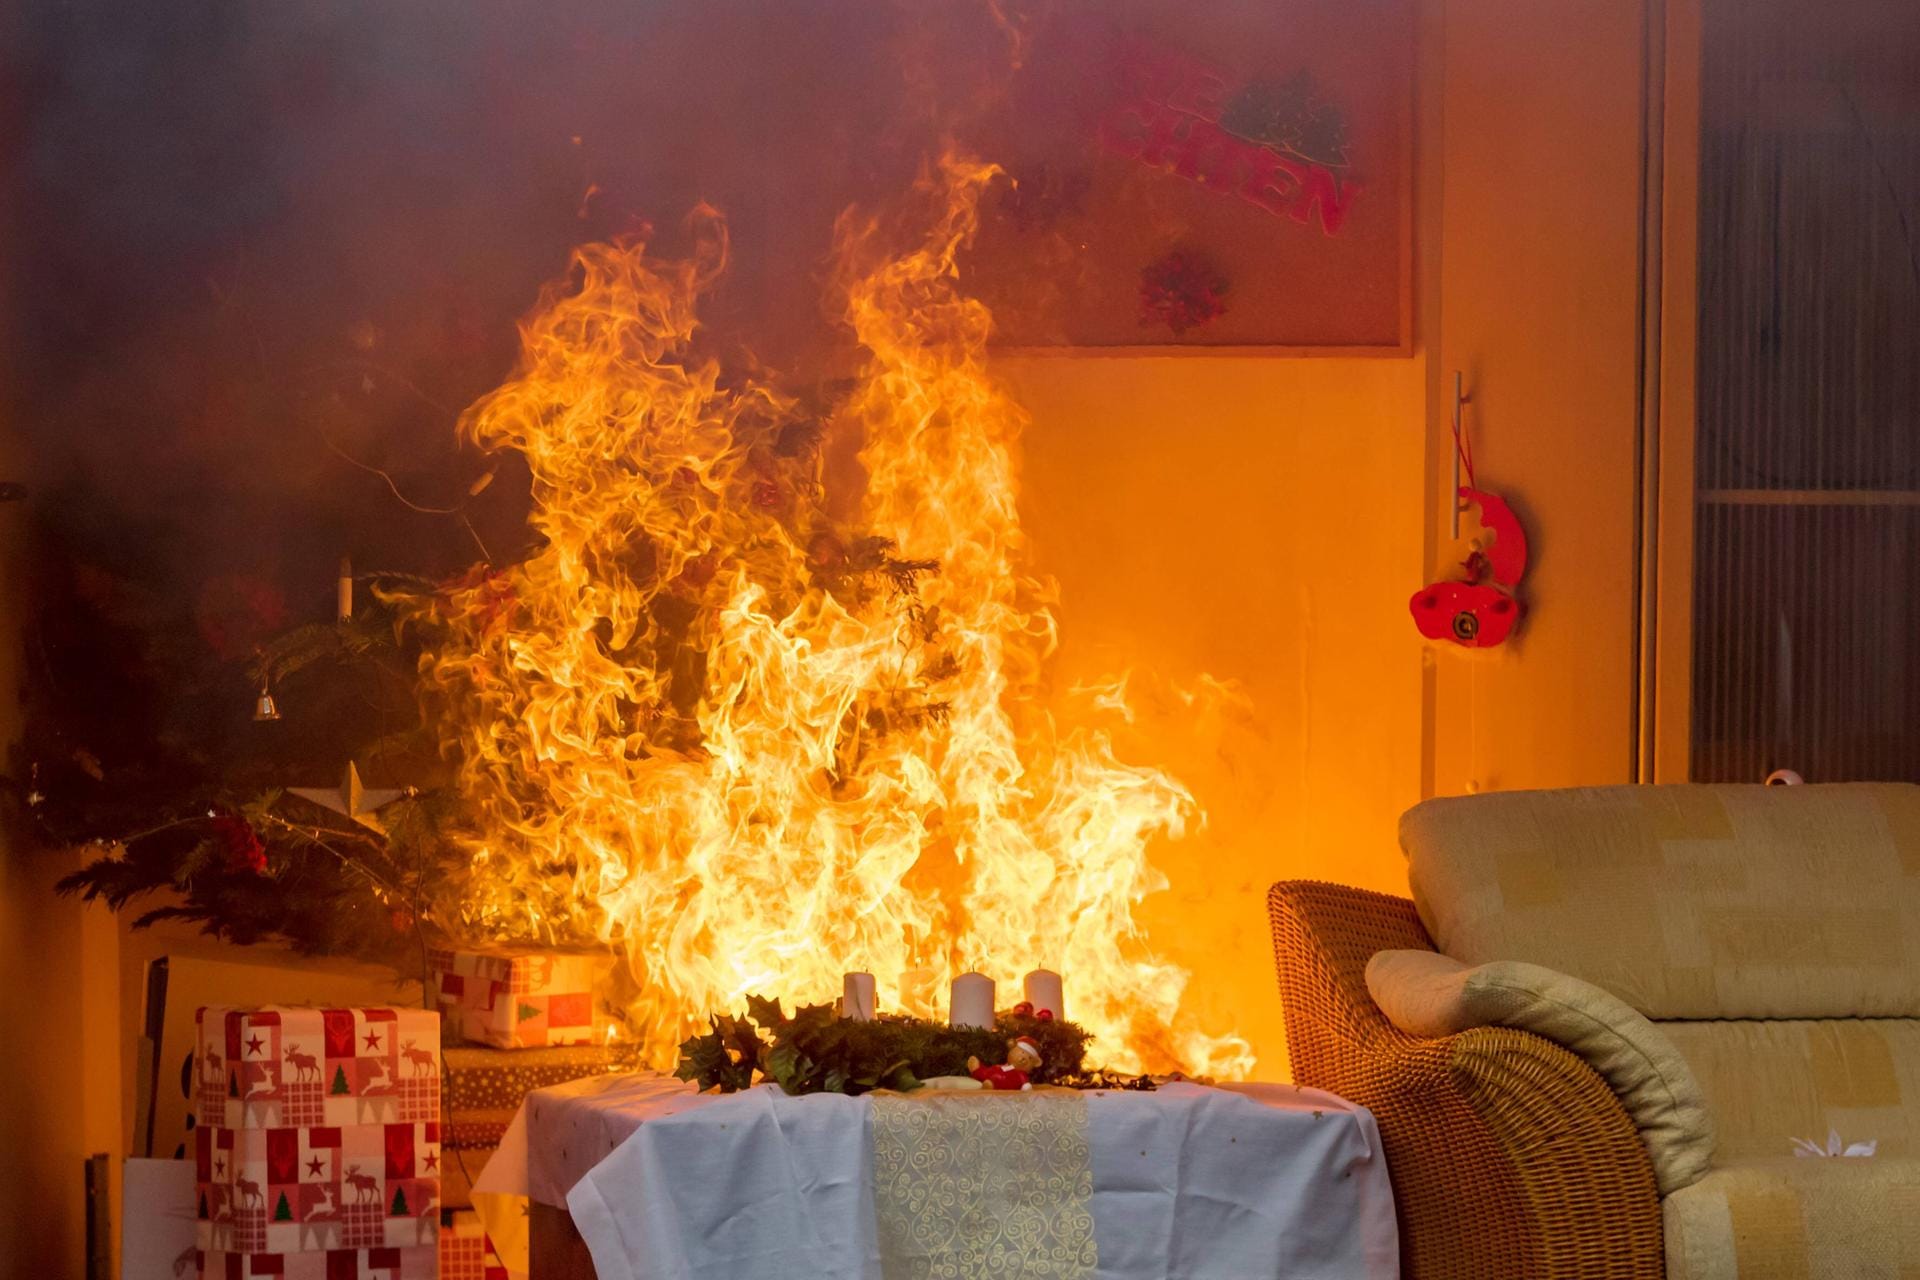 Über 200 Wohnungsbrände in den USA werden durch einen brennenden Weihnachtsbaum ausgelöst. Das Risiko eines Feuers kann allerdings durch regelmäßige Bewässerung verhindert werden. (Quelle: Bitprojects)